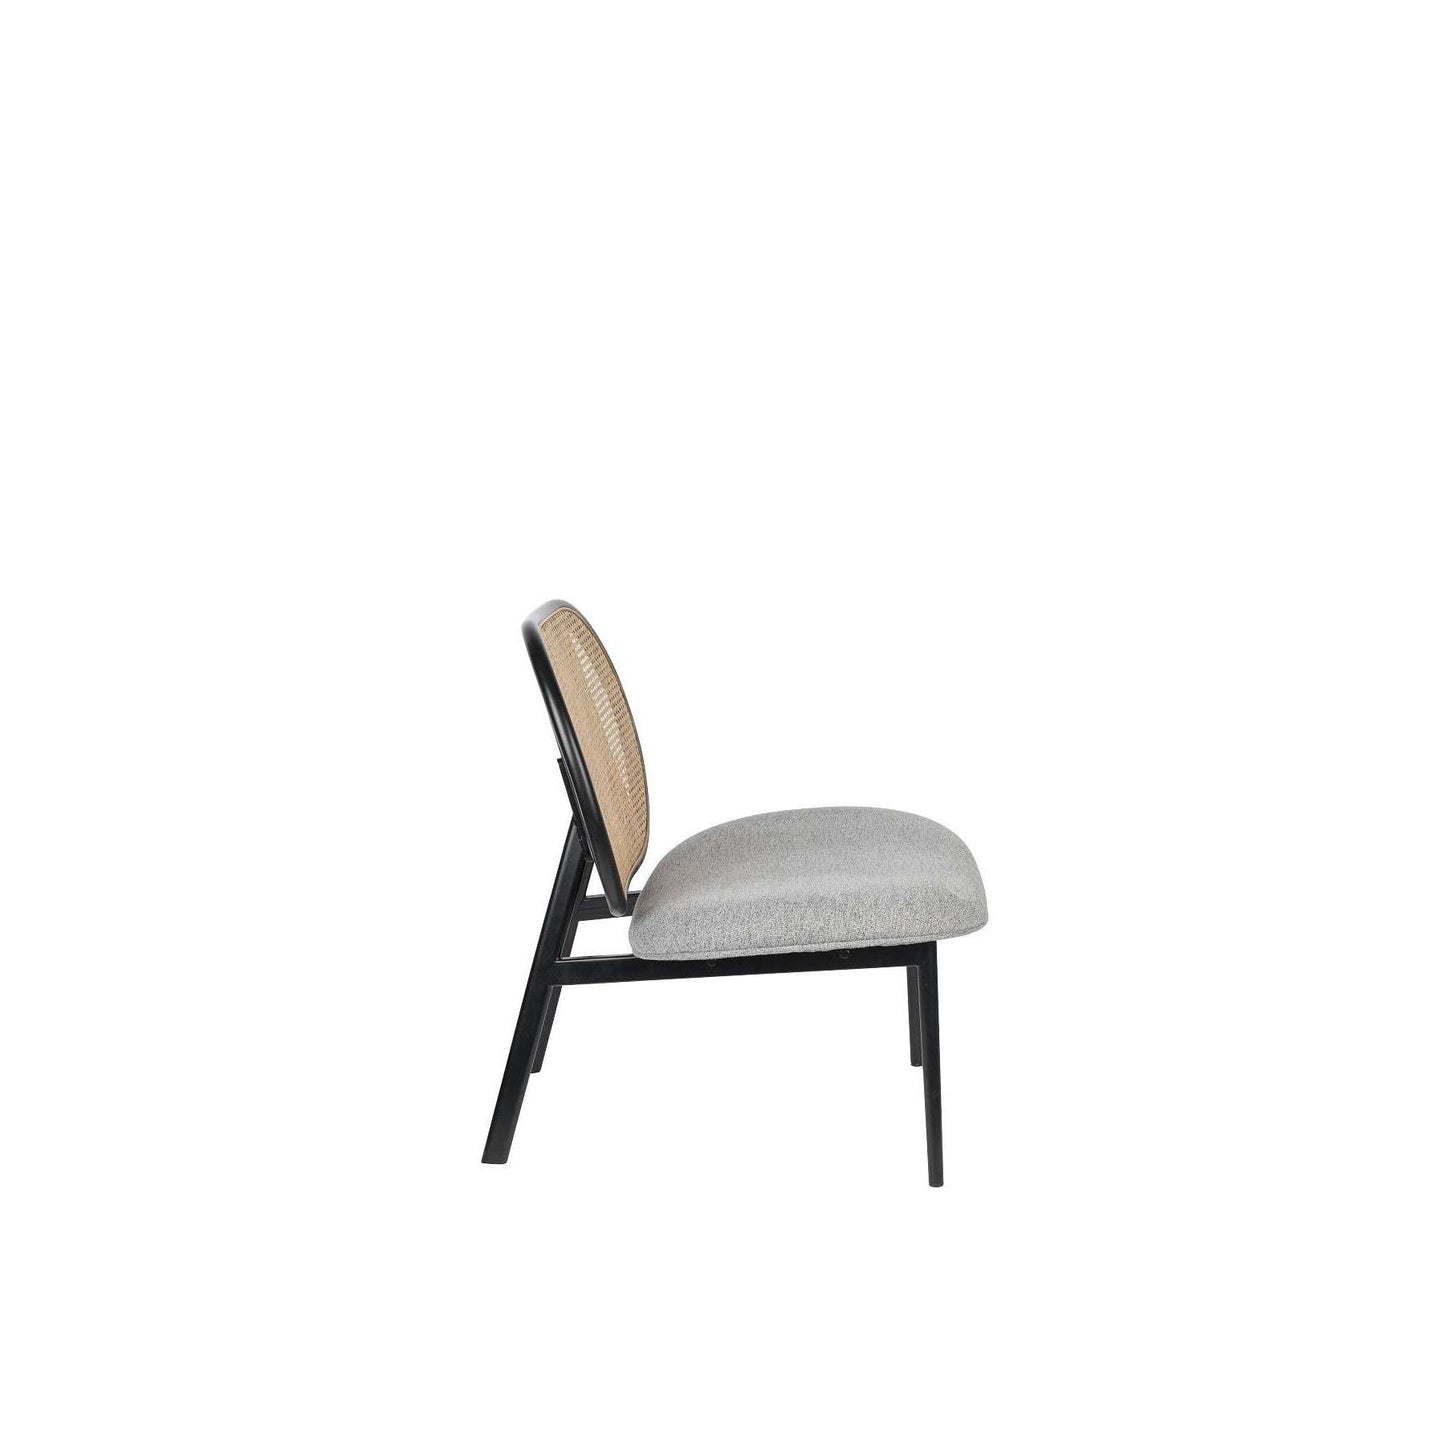 Zuiver fauteuil spike natural/grijs 70 x 78,6 x 84,1 cm